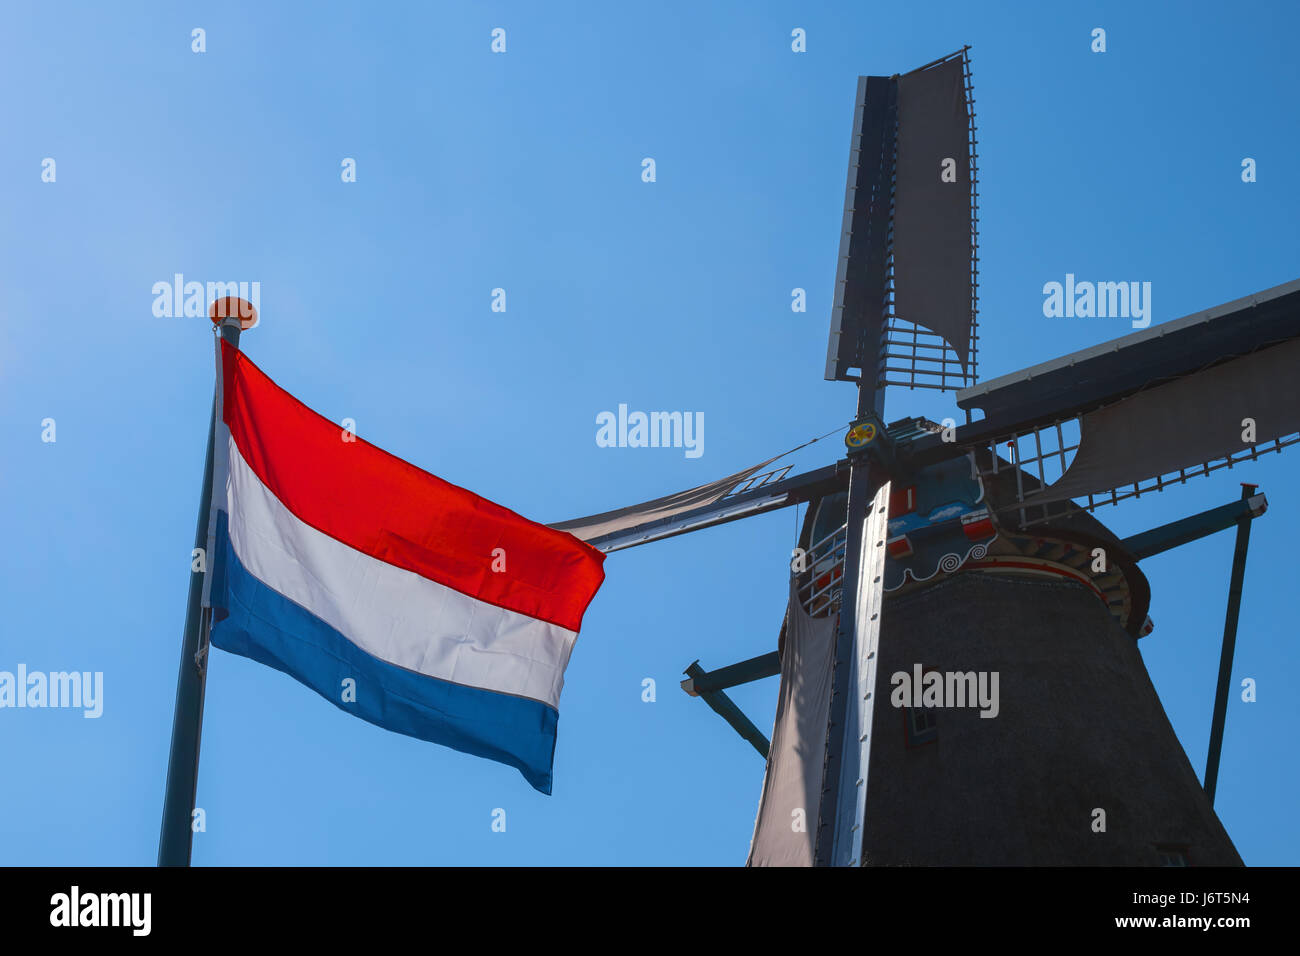 Famoso antiguo molino de viento holandés y el pabellón de los Países Bajos, Zaanse Schans, Países Bajos, Europa. Molino holandés típico paisaje rural en Holanda. Símbolo de t Foto de stock